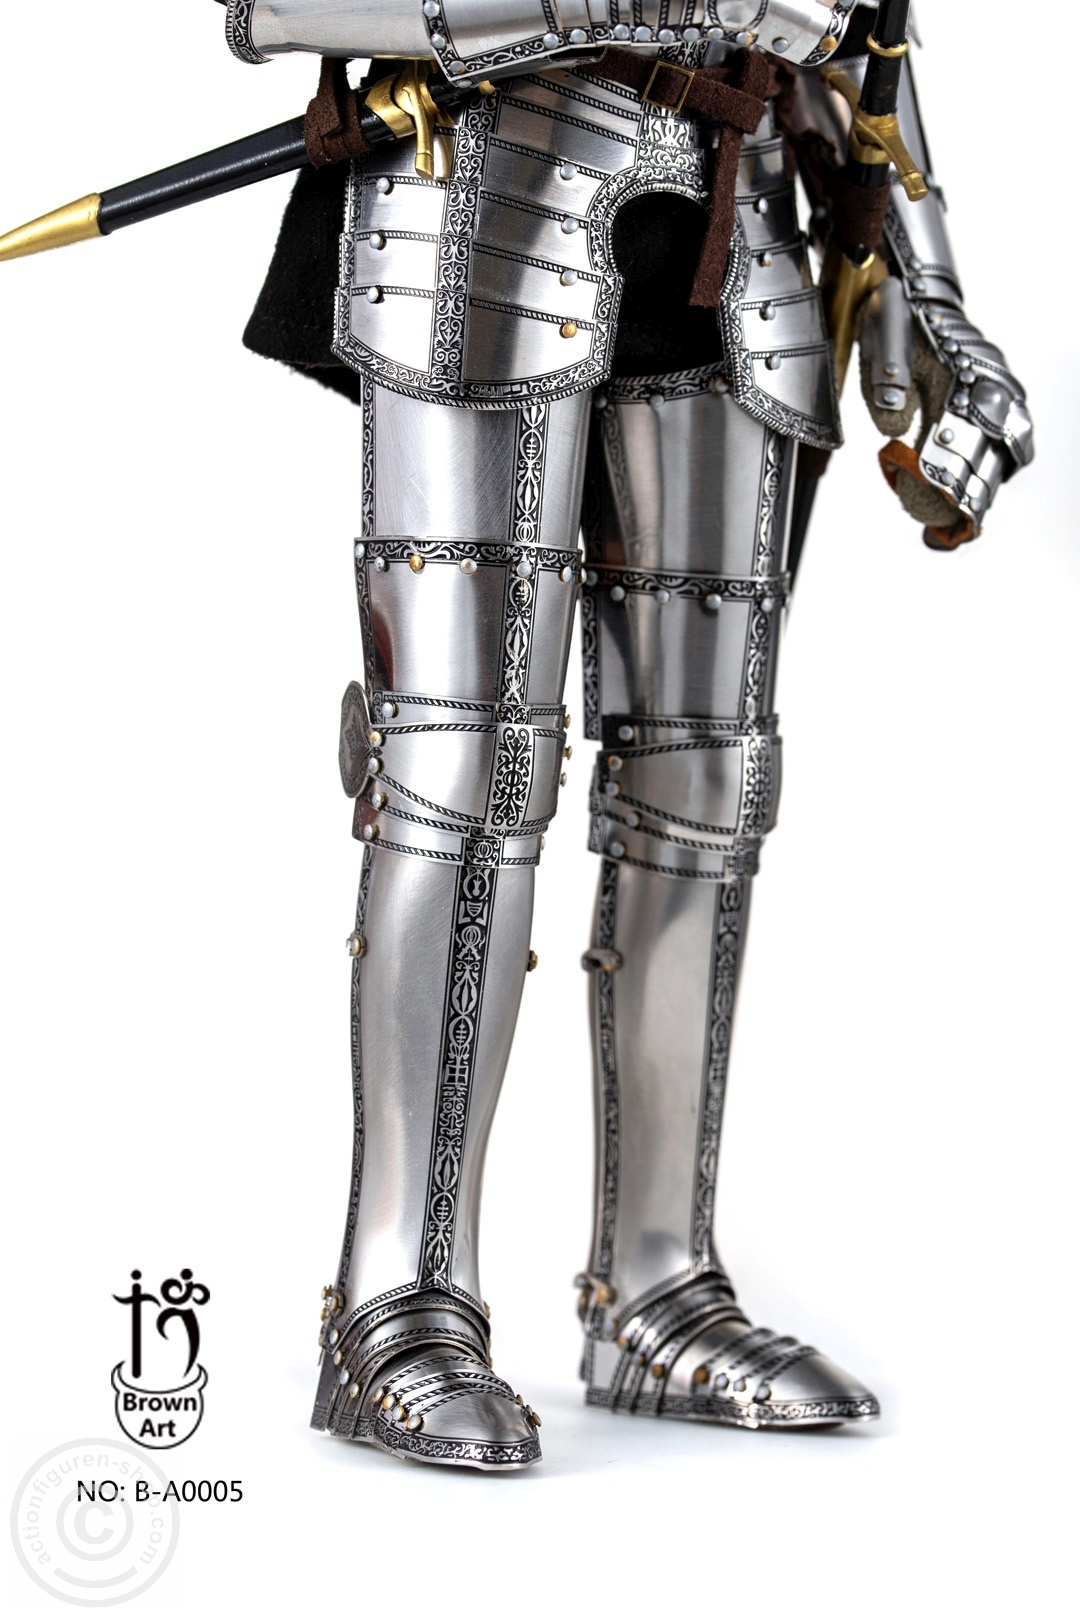 Duke of Saxony-Coburg (1548) – in Armor